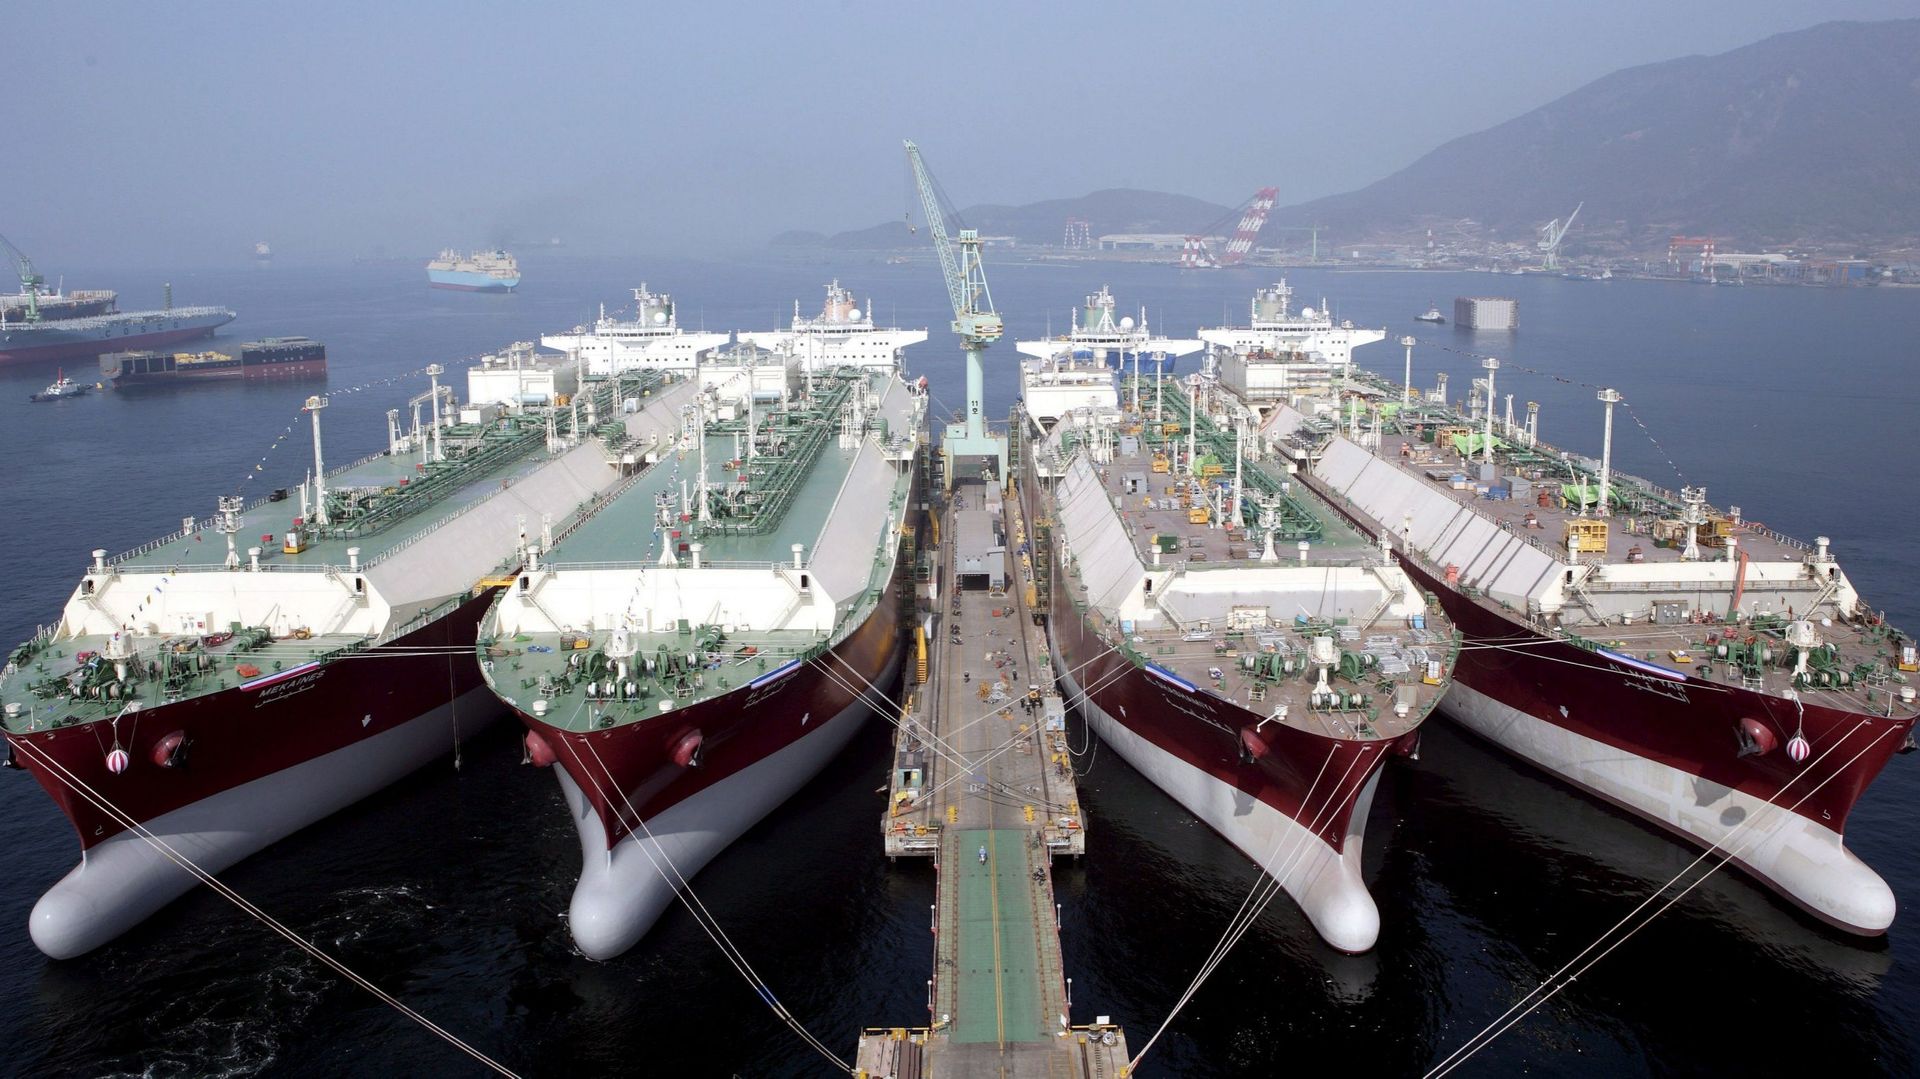 Nouveaux transporteurs de gaz naturel liquide (GNL) à quai sur l’île de Goje, construits par Samsung Heavy Industries. Les navires avaient été baptisés par le président de Qatar Gas Al-Suwaidi et son épouse le 9 février 2009.